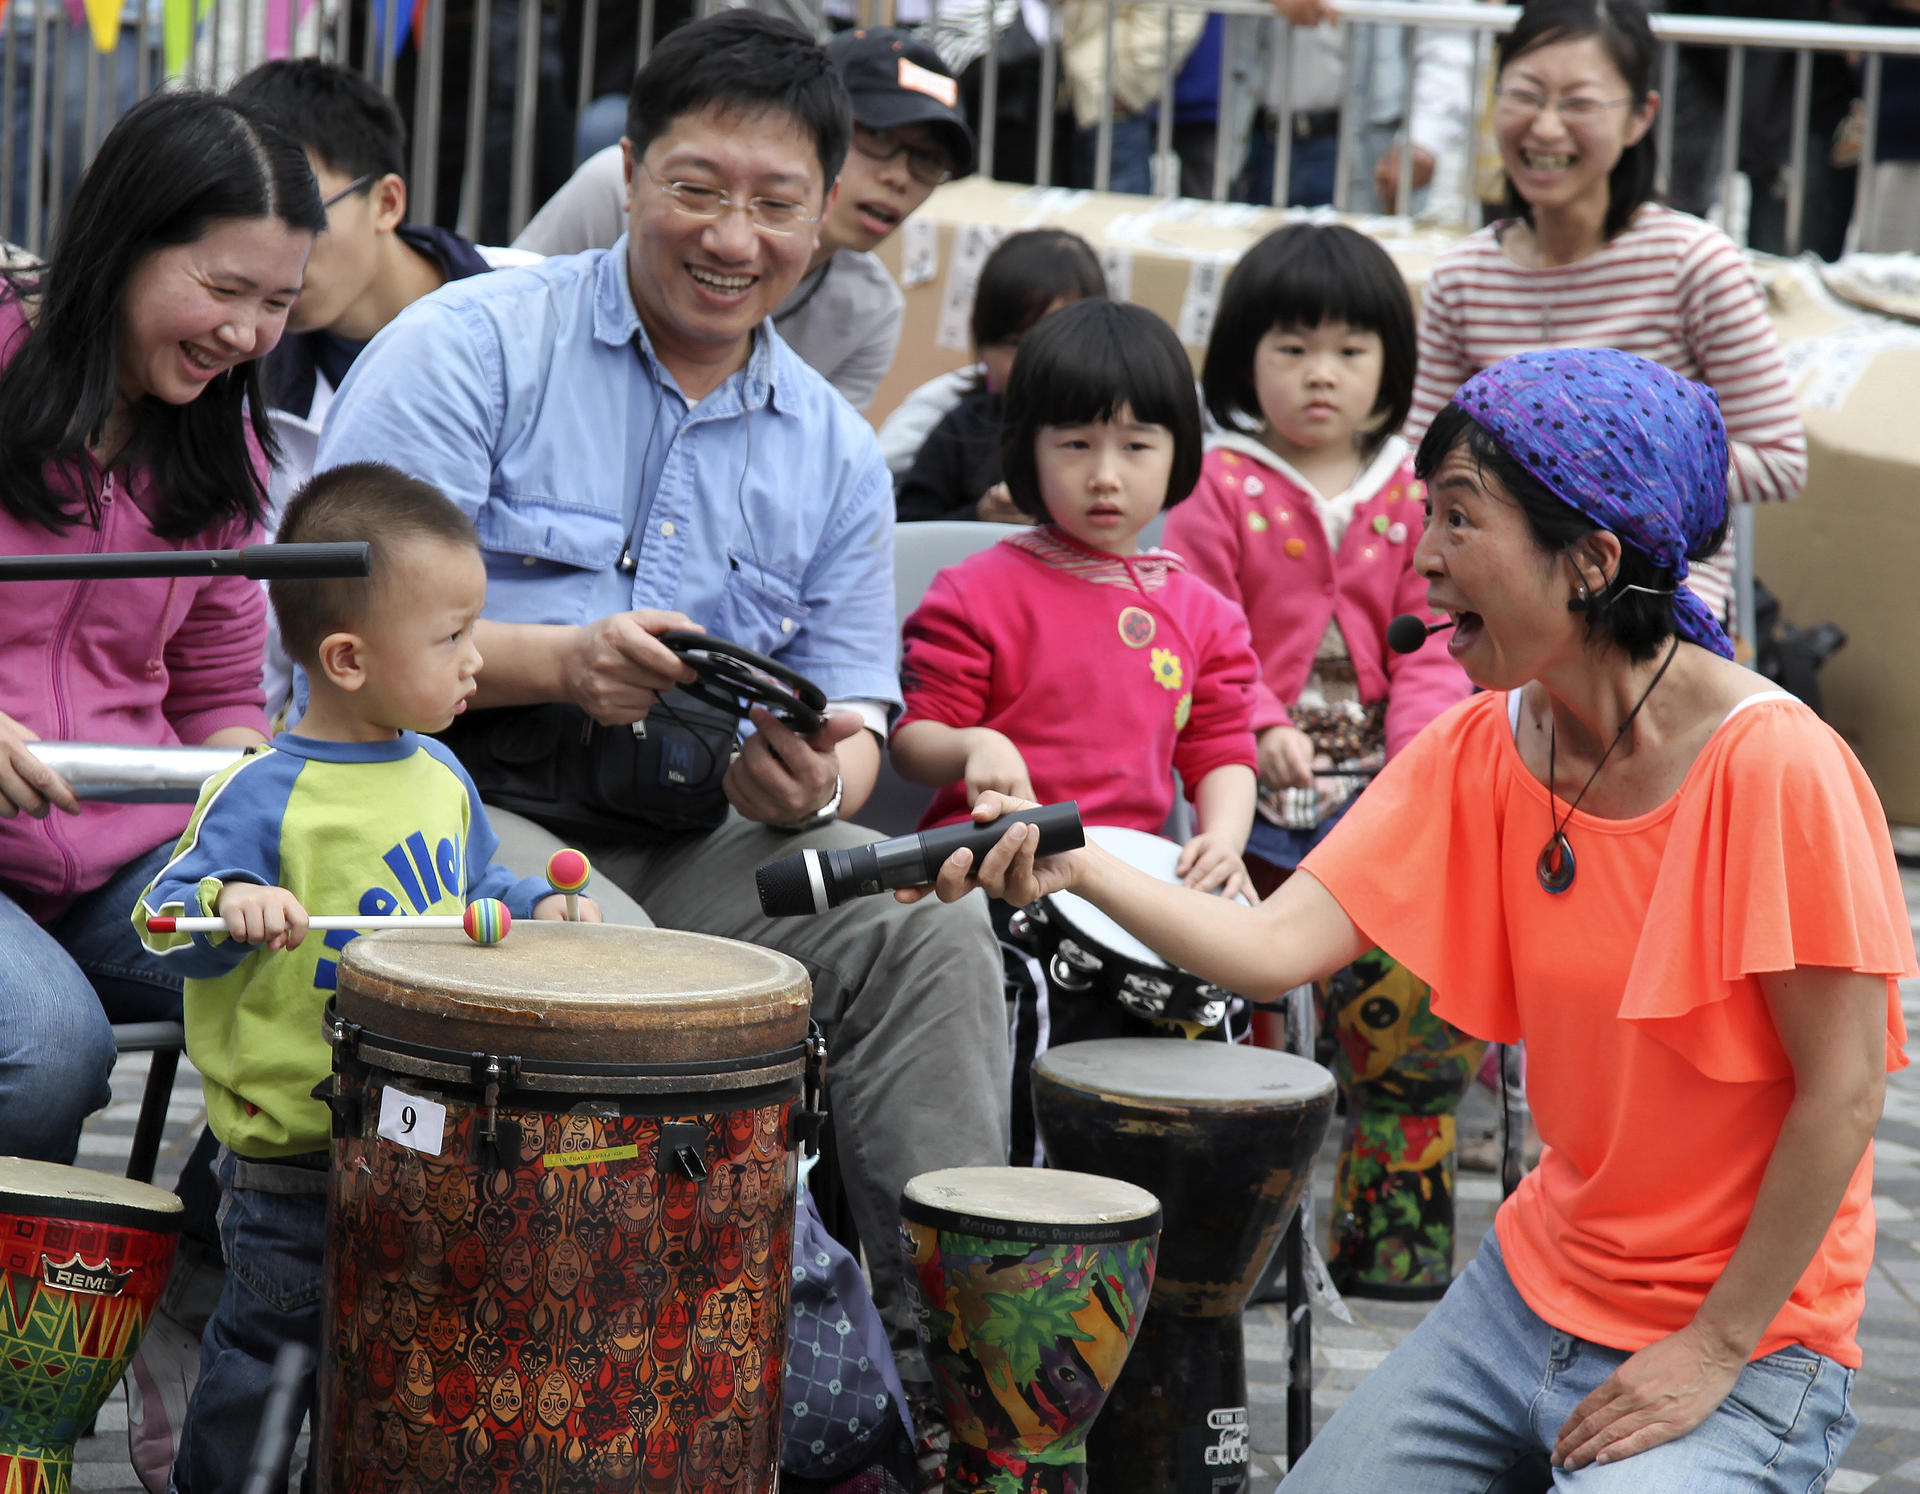 Kumi Masunaga introduces local families to the joys of Drum Jam. Photo: Danny Chan